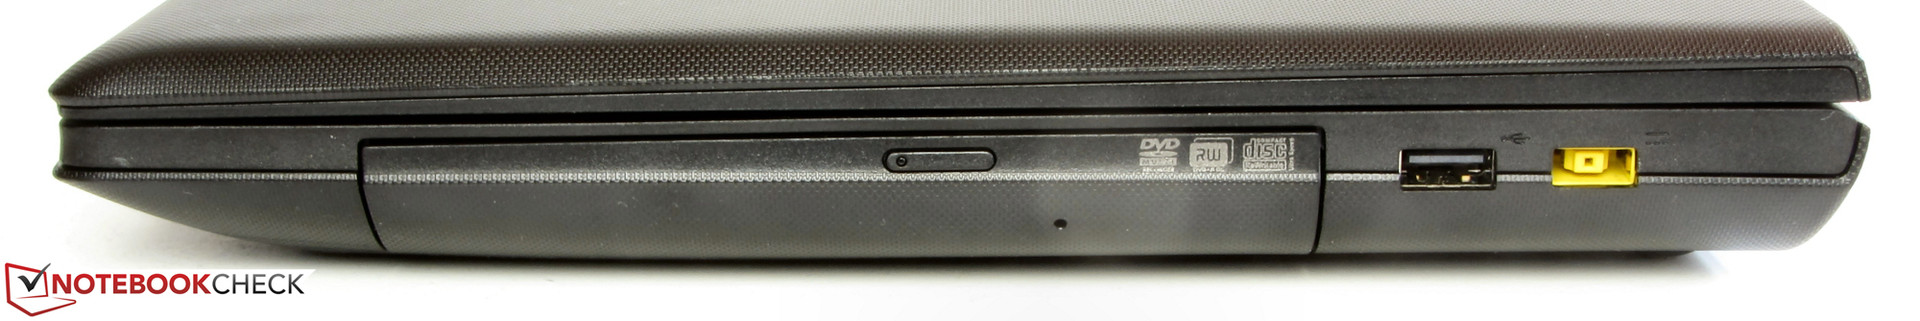 Lenovo G510 Notebook Review